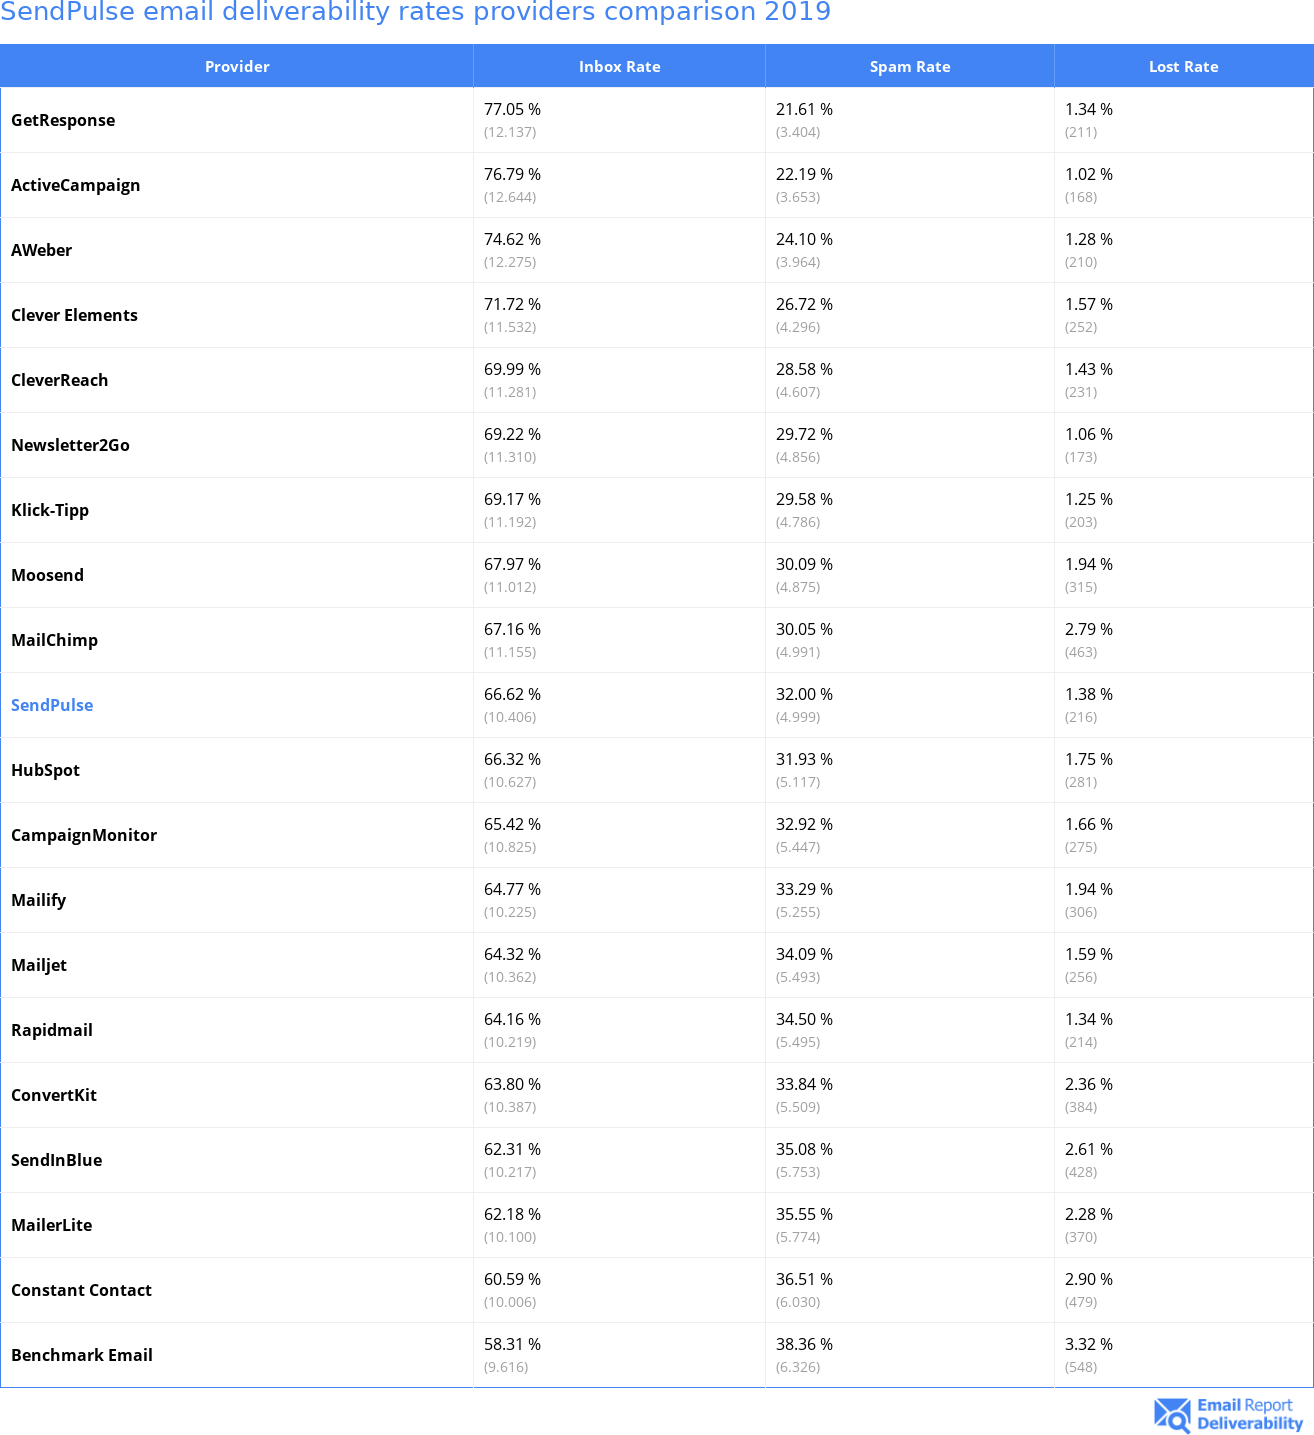 SendPulse email deliverability rates providers comparison 2019